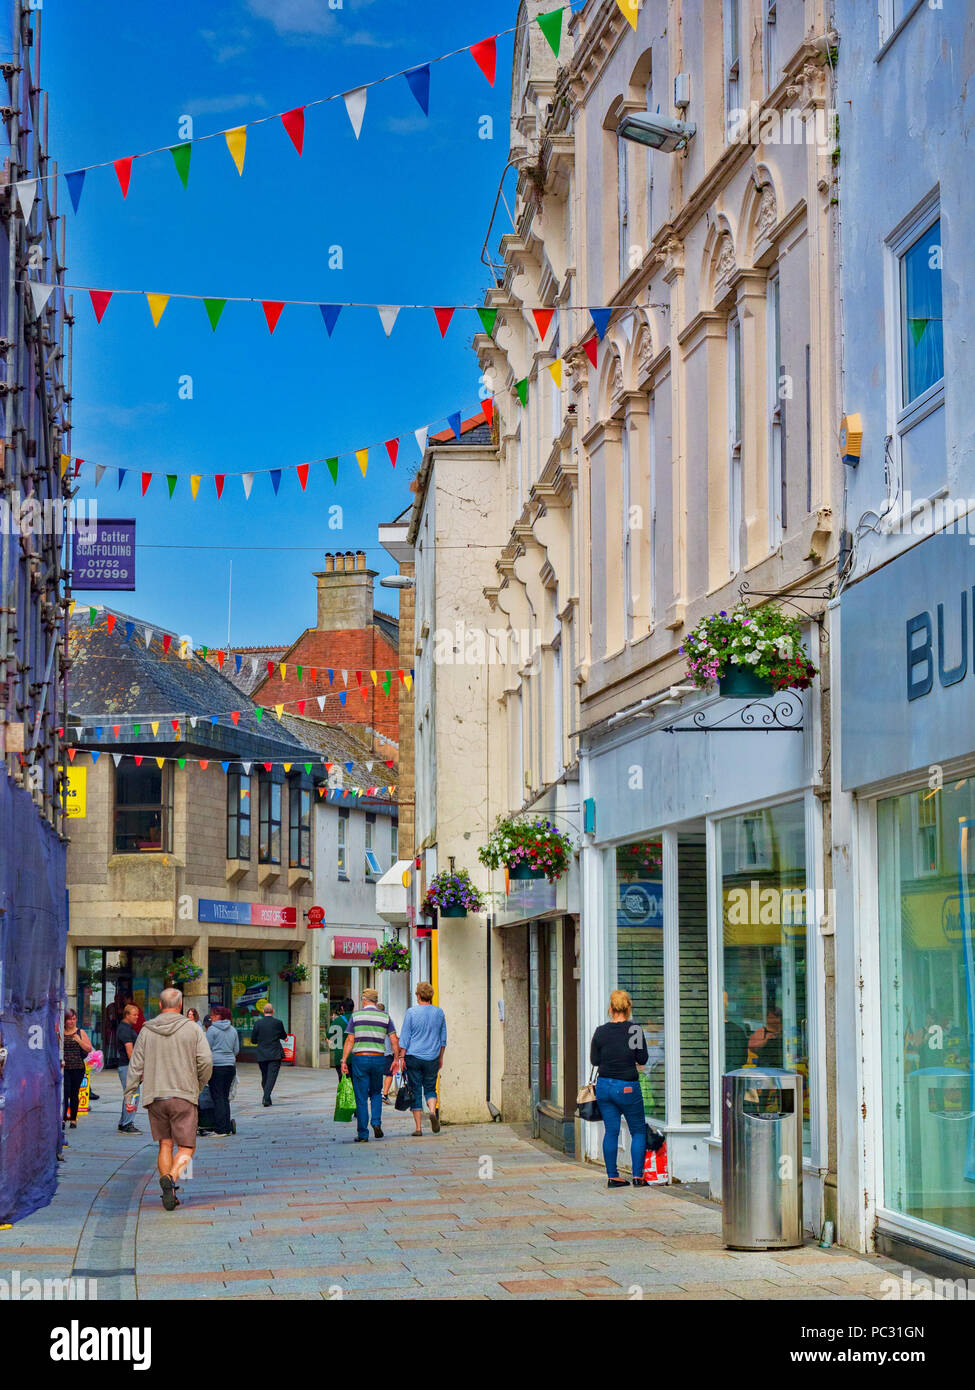 11 juin n 2018 : St Austell, Cornwall, UK - les gens dans la rue commerçante d'avancement. Banque D'Images